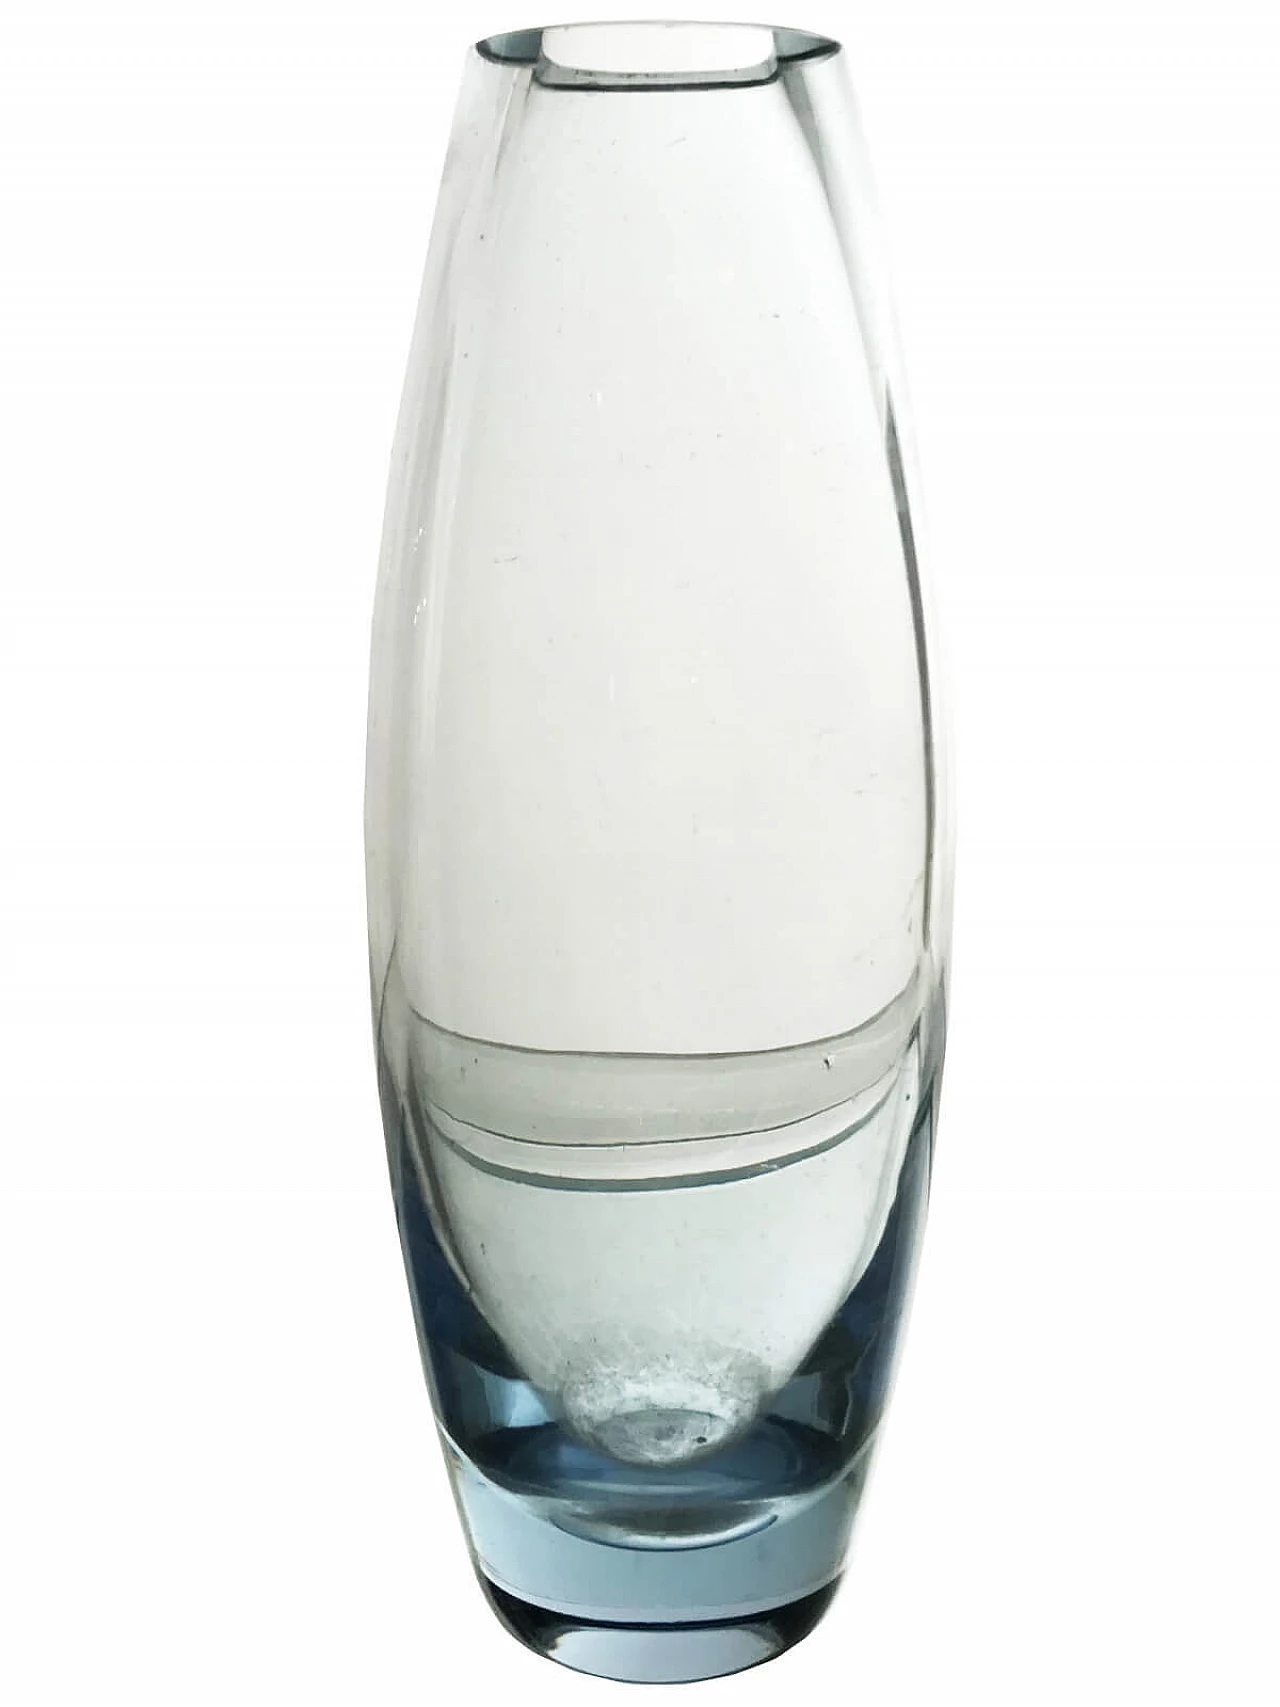 Vase "Torpedovase" by Per Lütken for Holmegaard 5